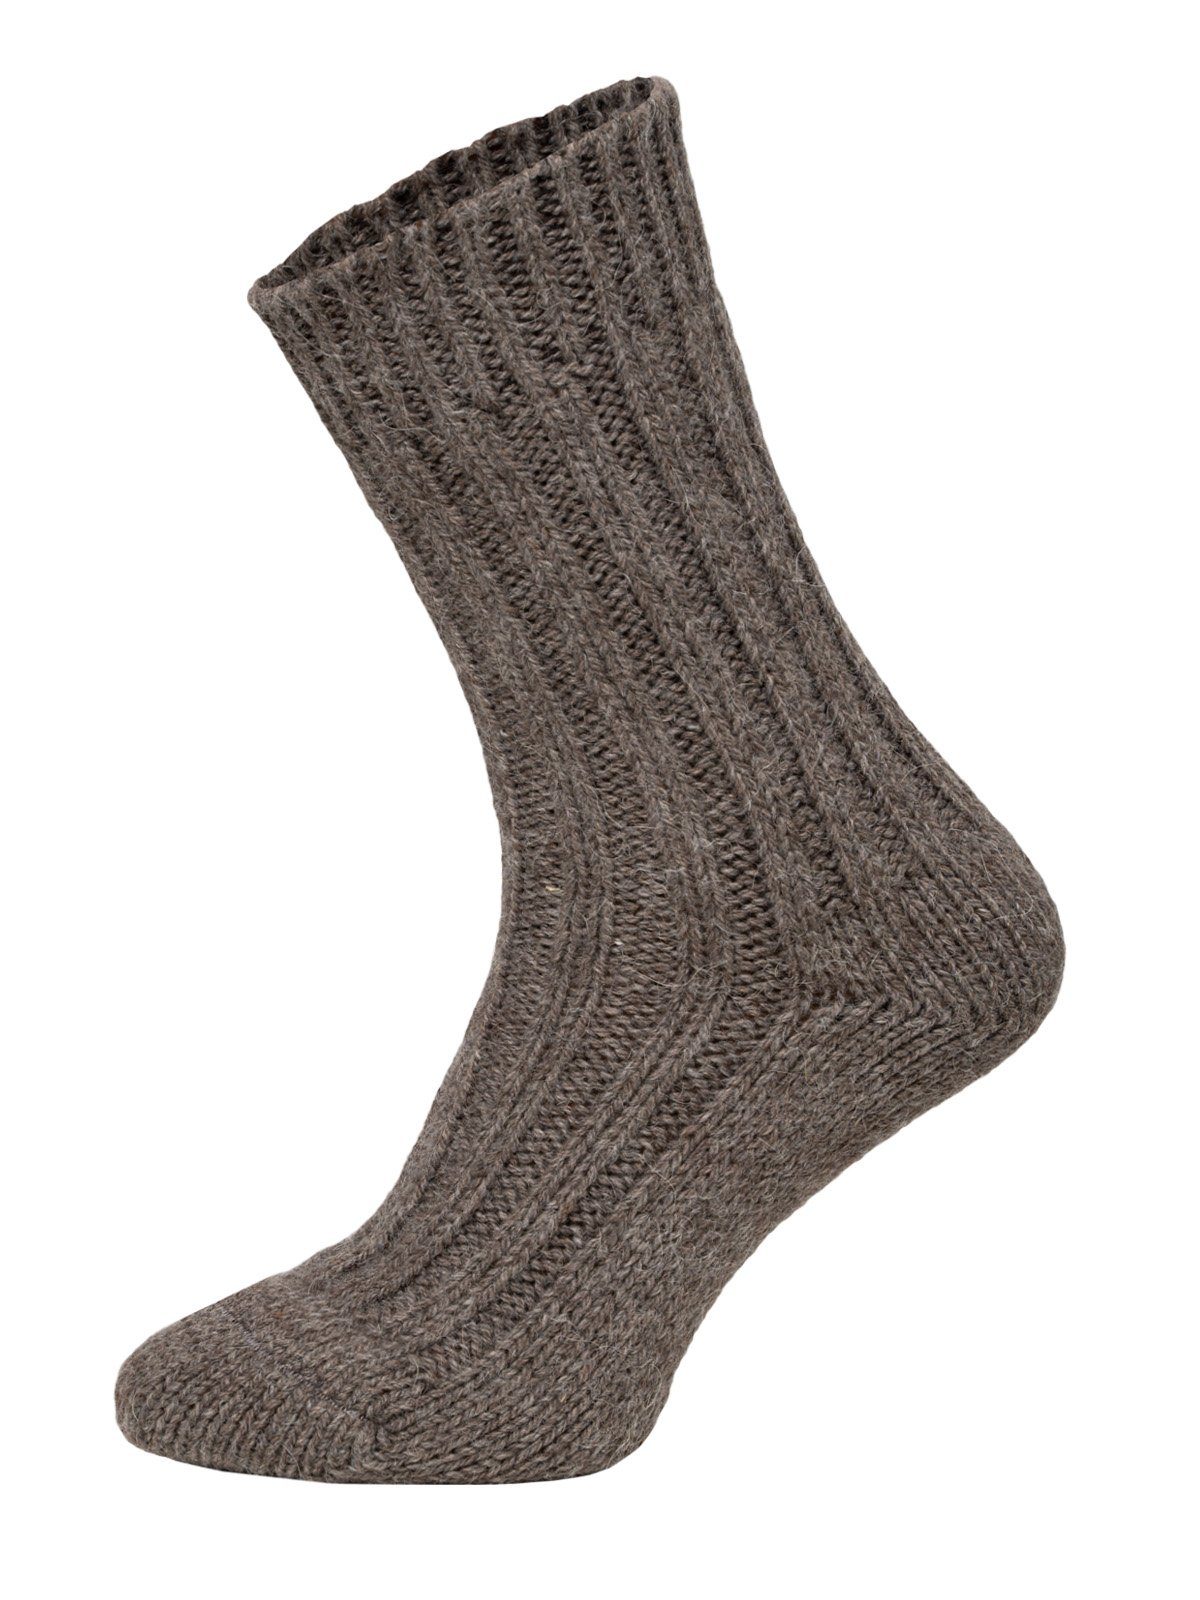 HomeOfSocks Socken Wollsocken mit Alpakawolle Strapazierfähige und warme Wollsocken mit 50% Wollanteil und Alpakawolle Taupe/Braun